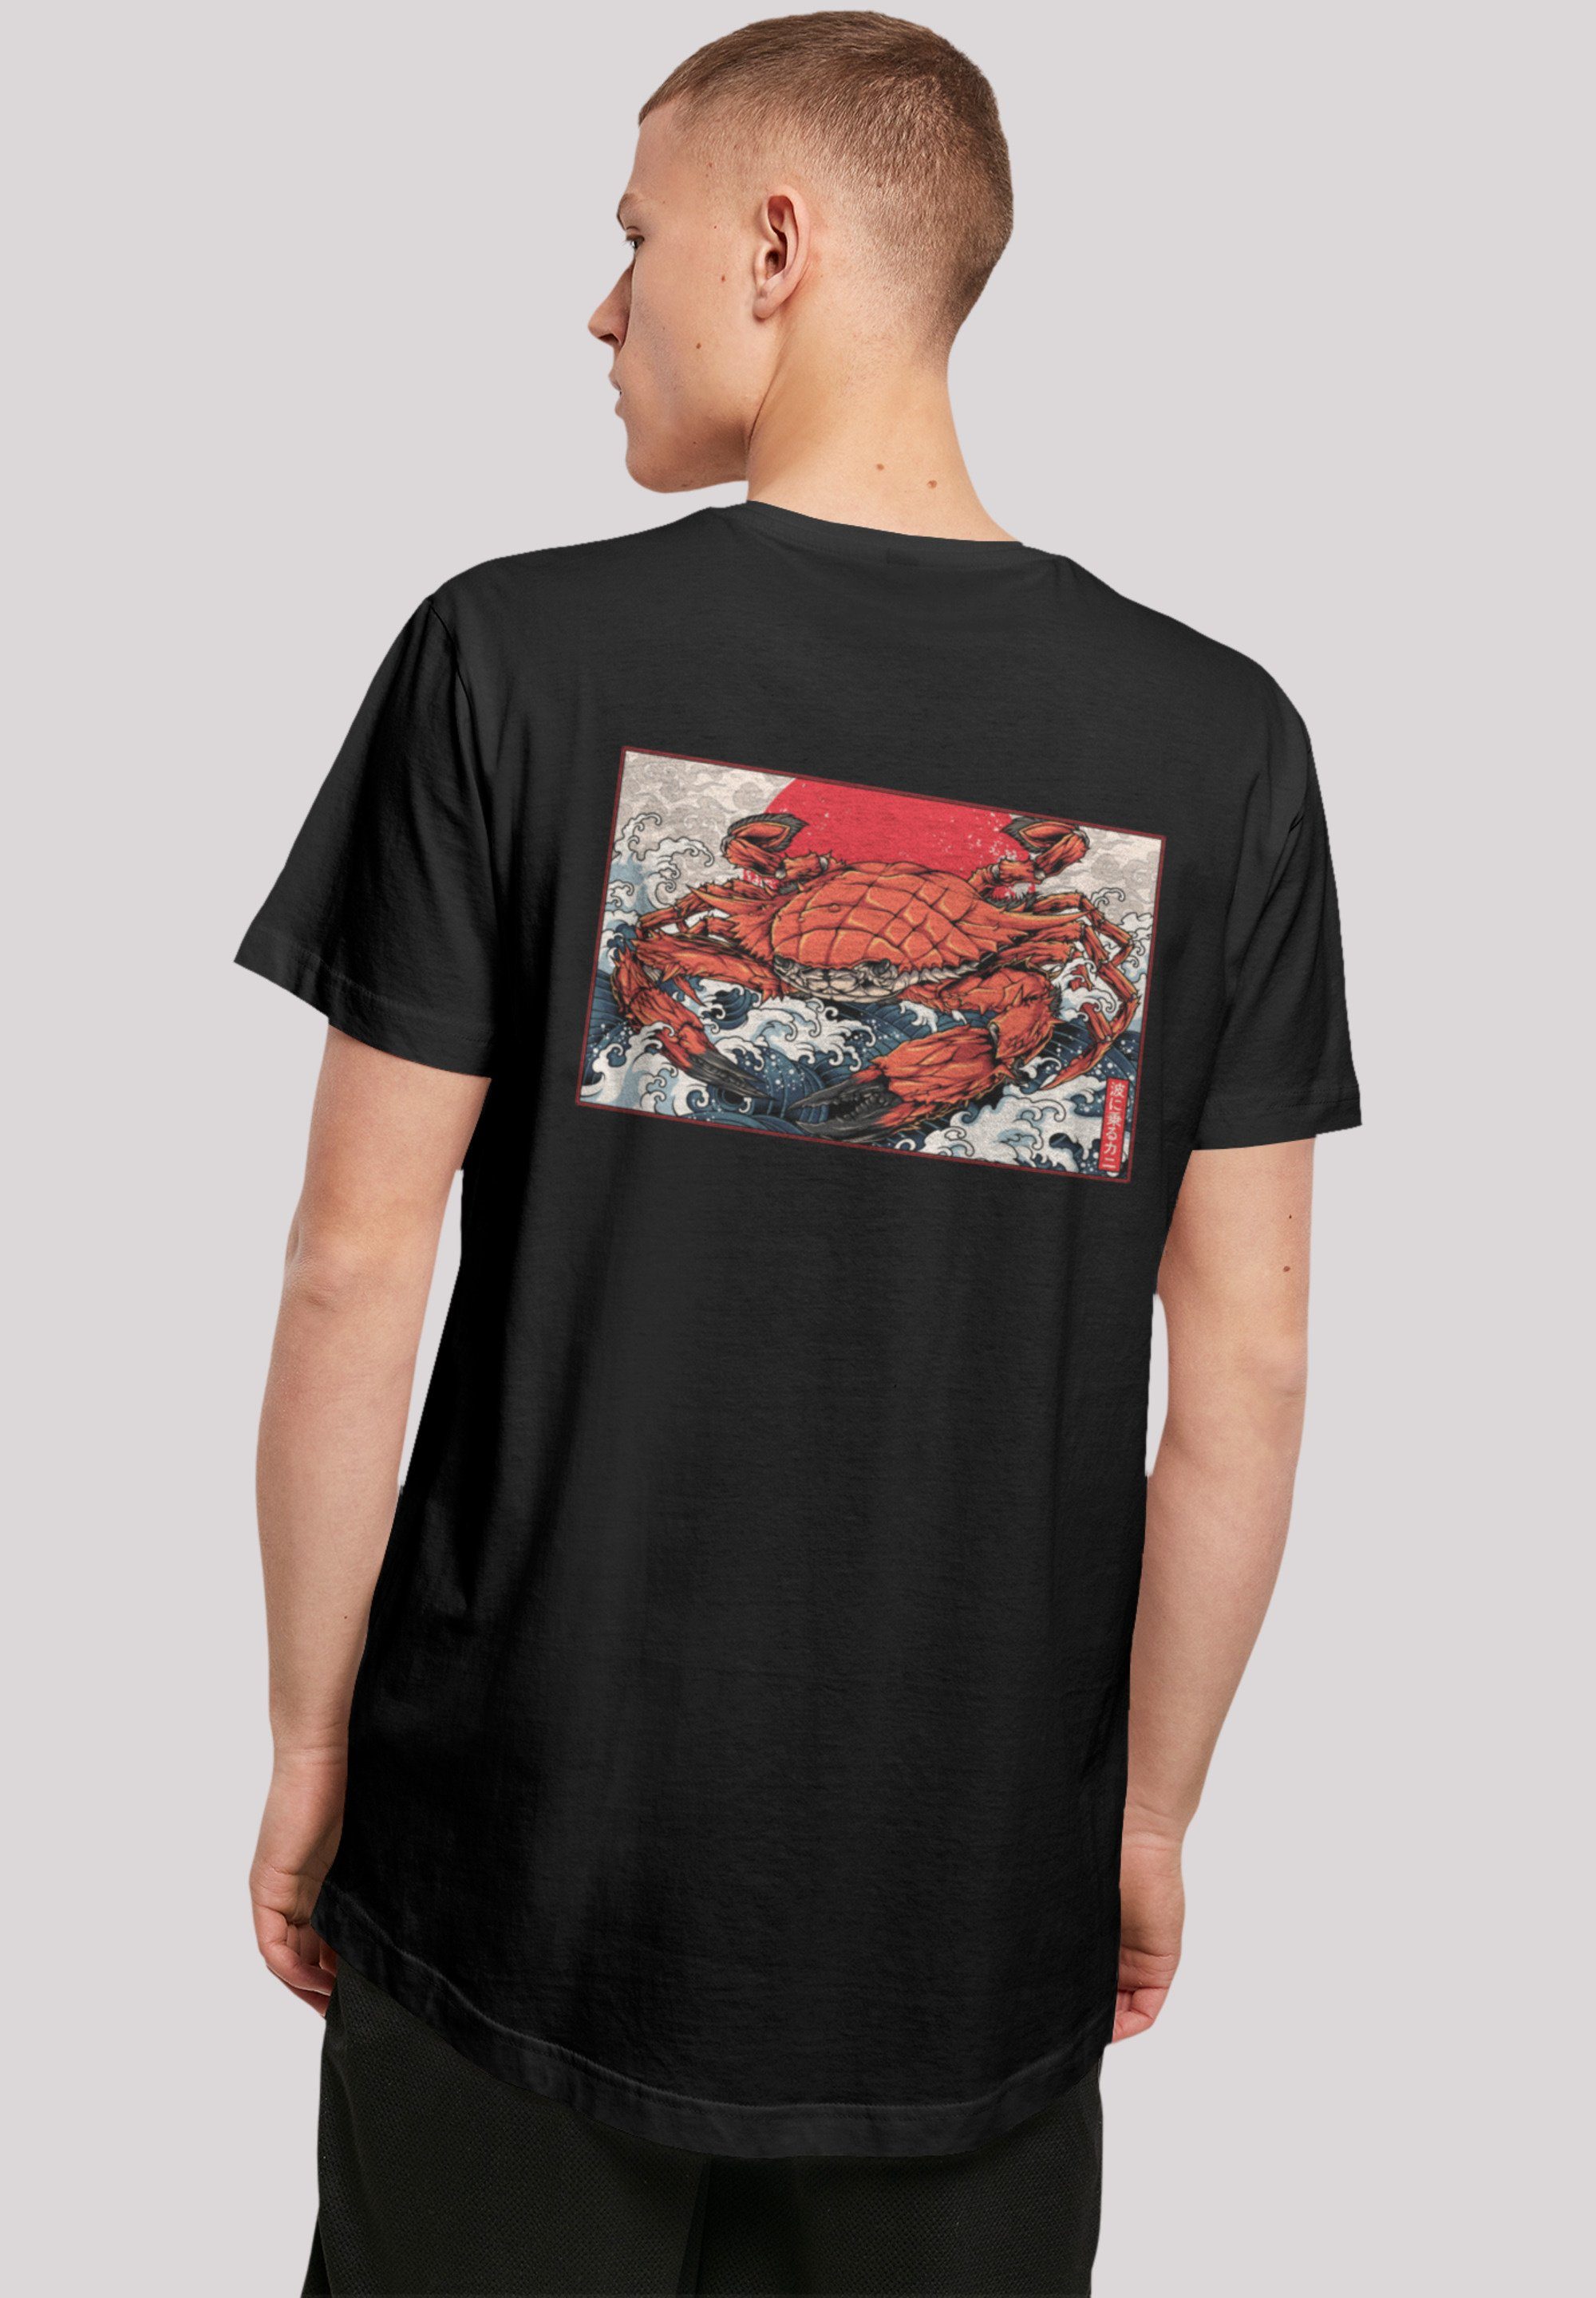 T-Shirt weicher Japan hohem Sehr Baumwollstoff Welle F4NT4STIC mit Crab Print, Tragekomfort